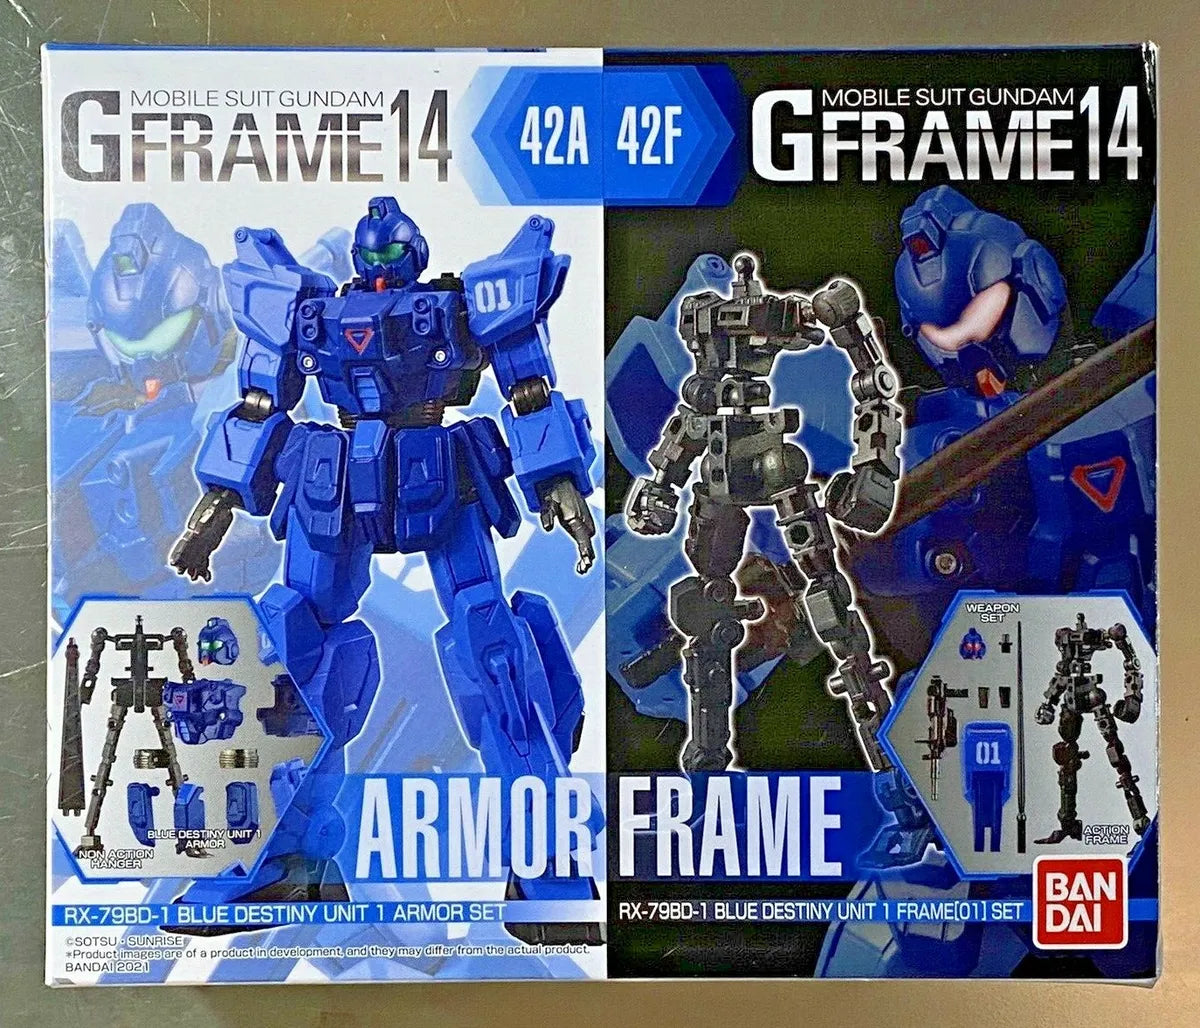 Gframe 14- Blue Destiny Unit 1 Armor set